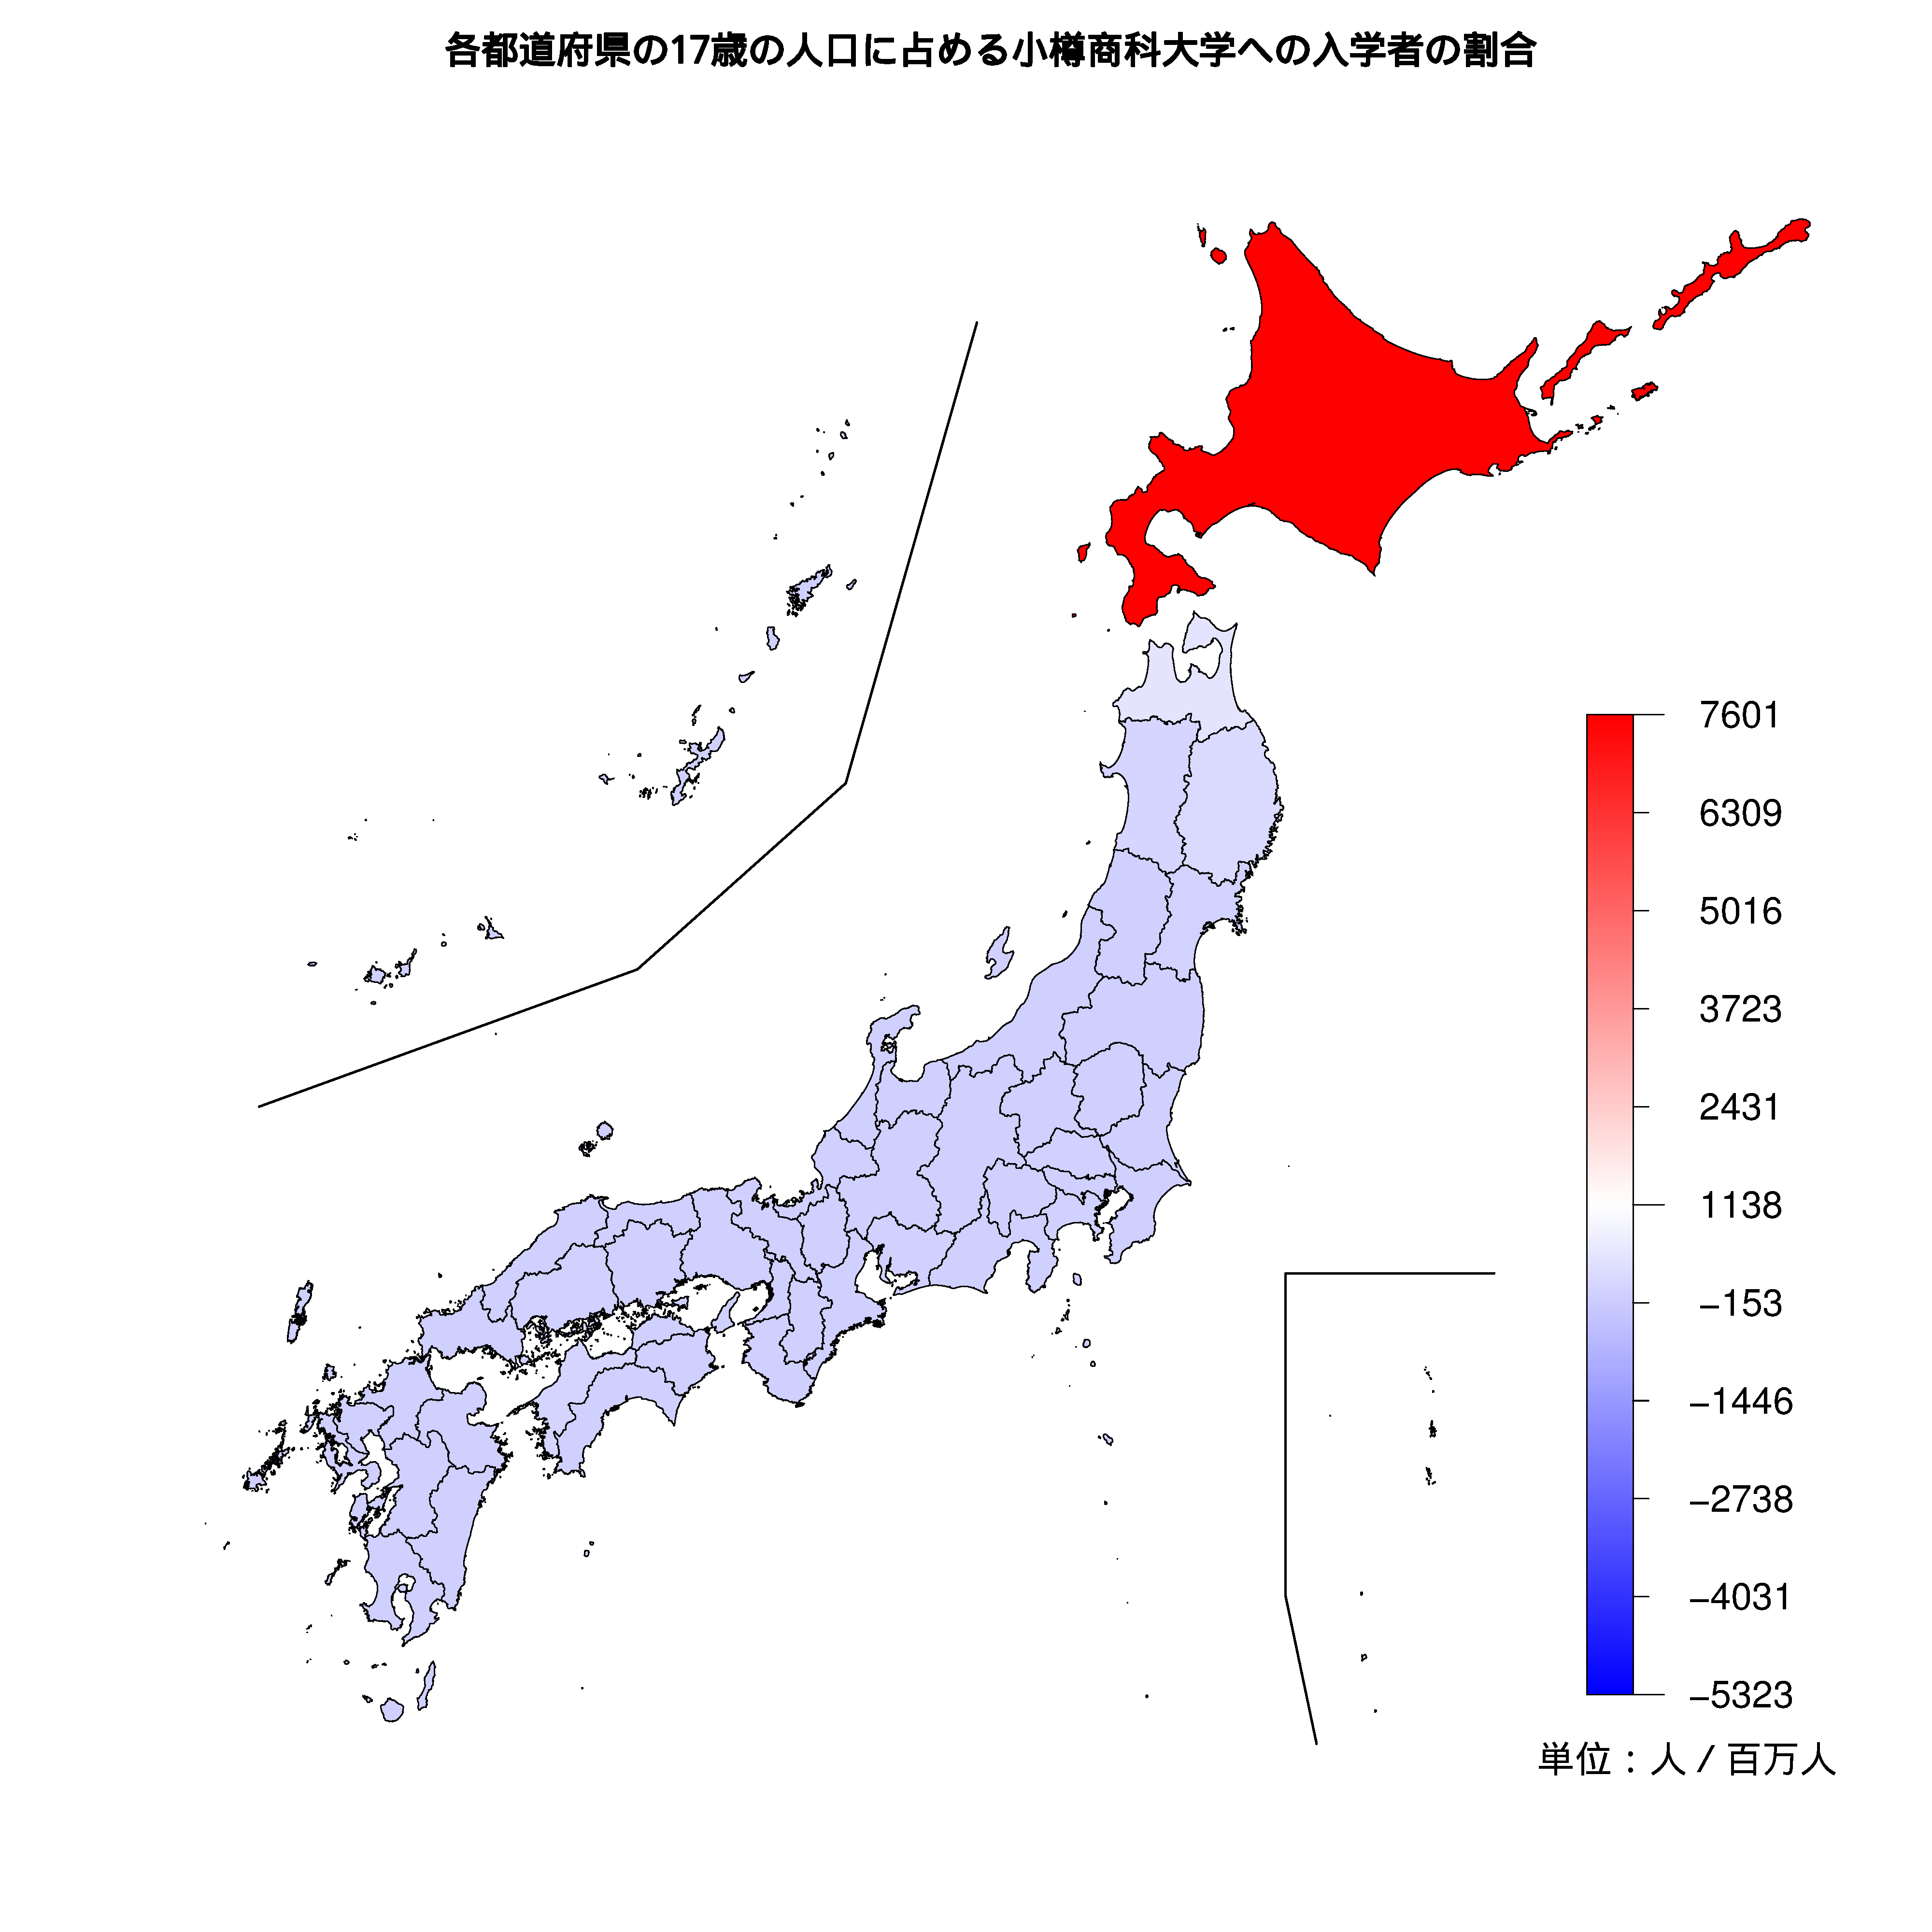 小樽商科大学への入学者が多い都道府県の色分け地図